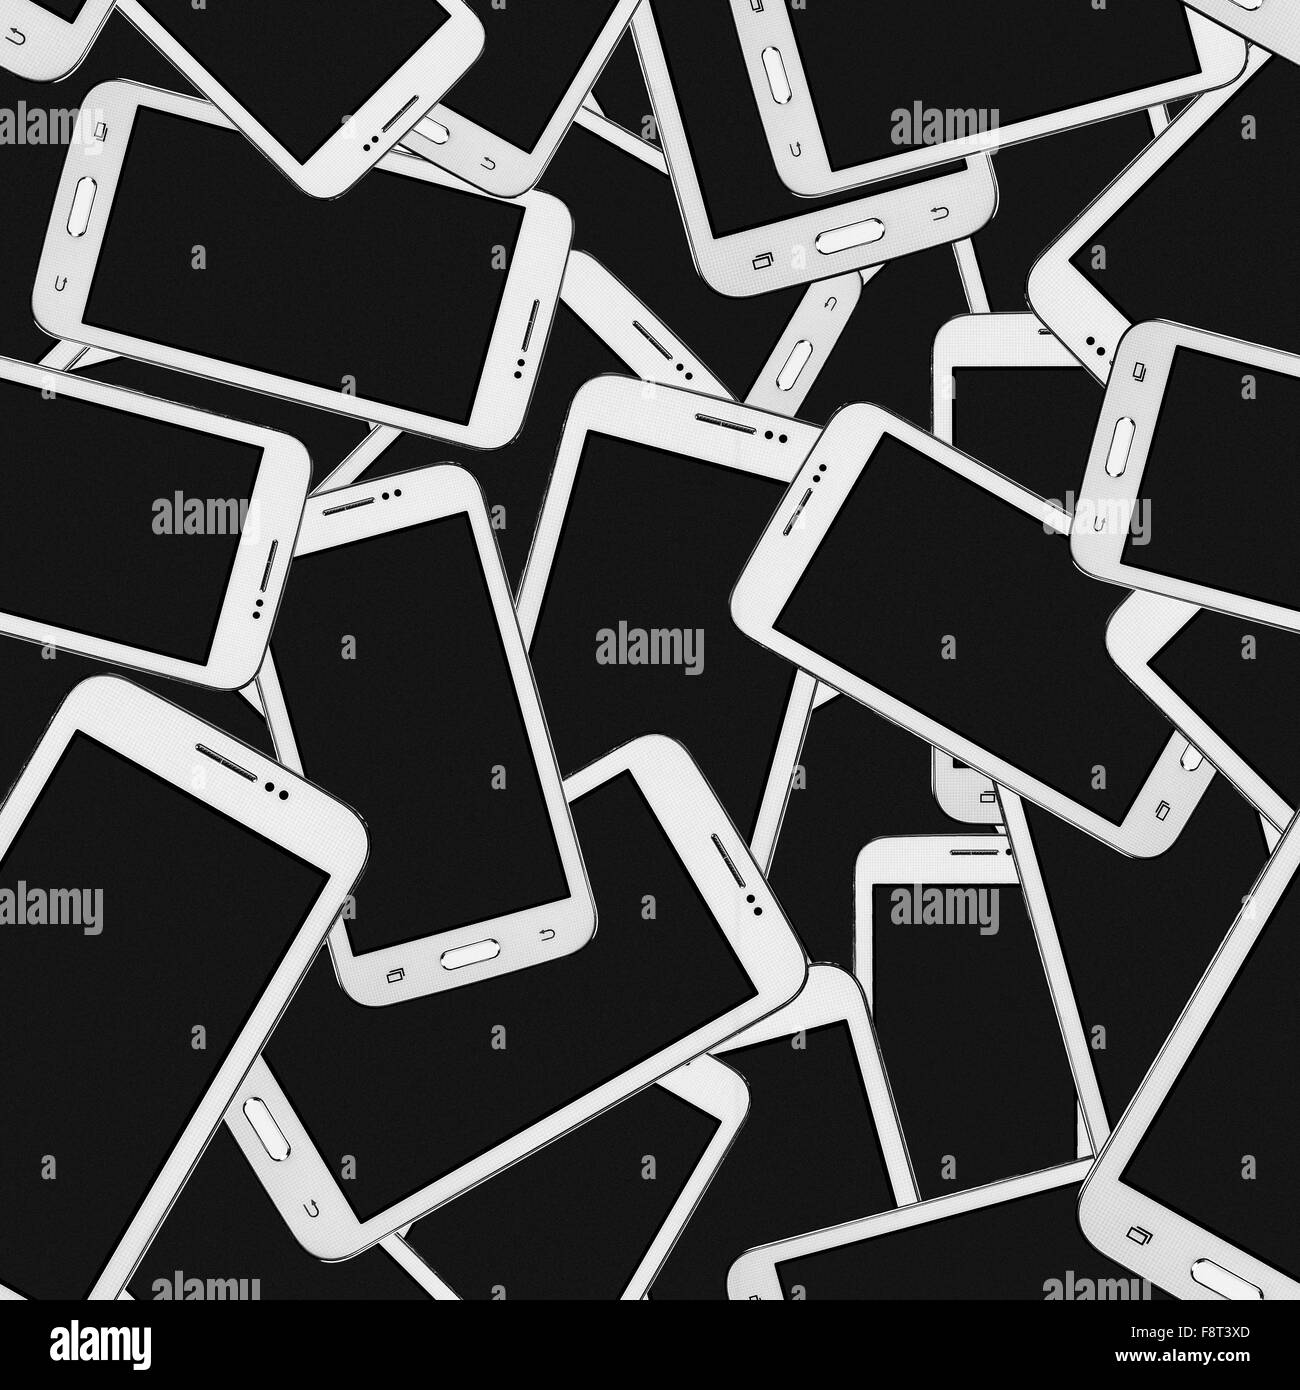 Modernen Mobiltelefon eingestellt abstrakte geometrische Musterdesigns auf einem schwarzen Hintergrund. Stockfoto